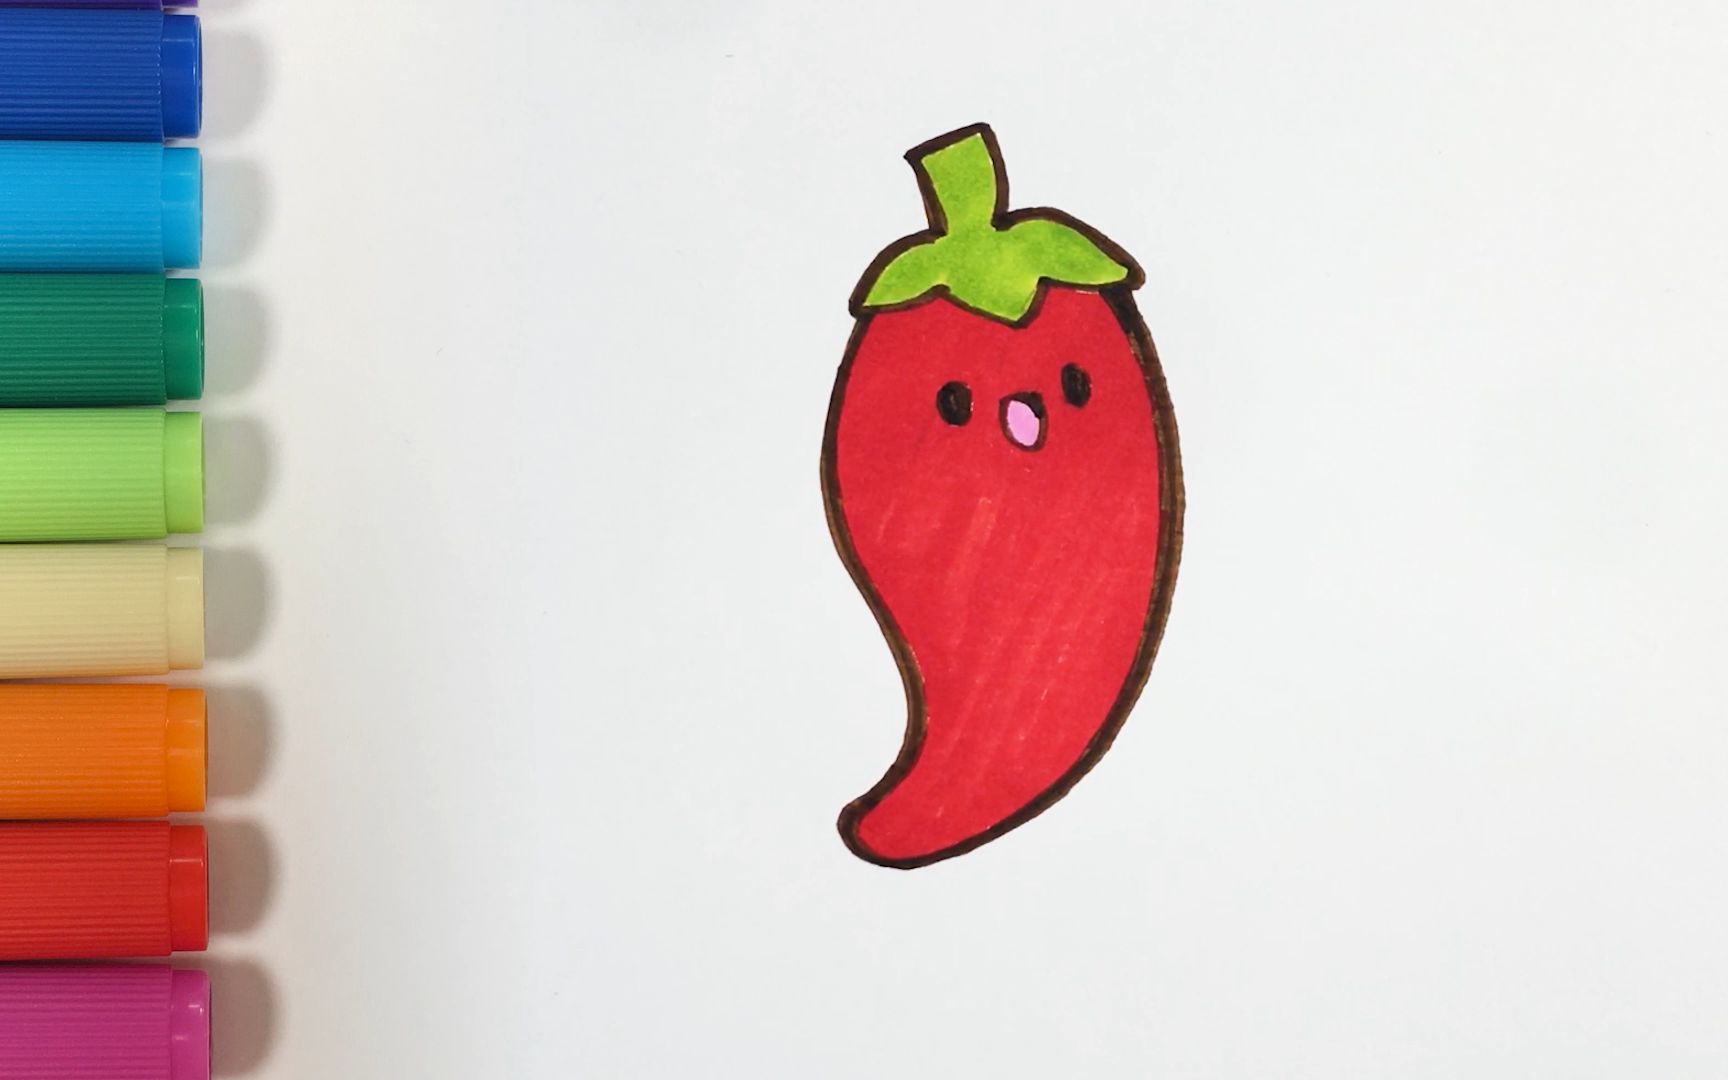 儿歌多多儿童简笔画 辣椒 宝贝拿出彩笔一起画一个可爱的卡通辣椒